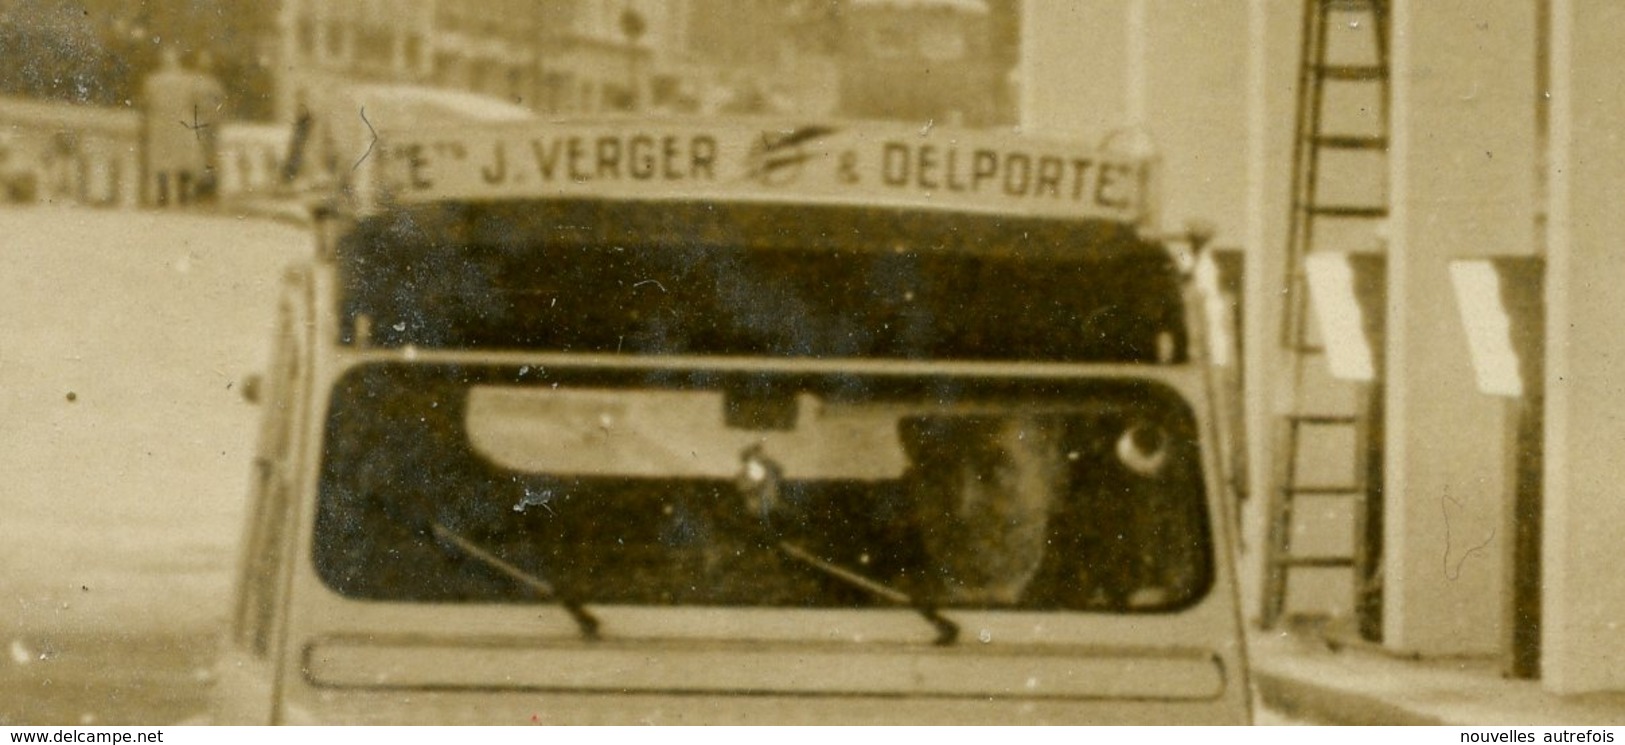 PHOTO AGIP R.COHEN - 2 CV CITROEN DE 1956 AVEC PUB " Ets J. VERGER " EMPRUNTANT  PASSAGE SOUTERRAIN DE L'ALMA 02/10/1956 - Automobiles